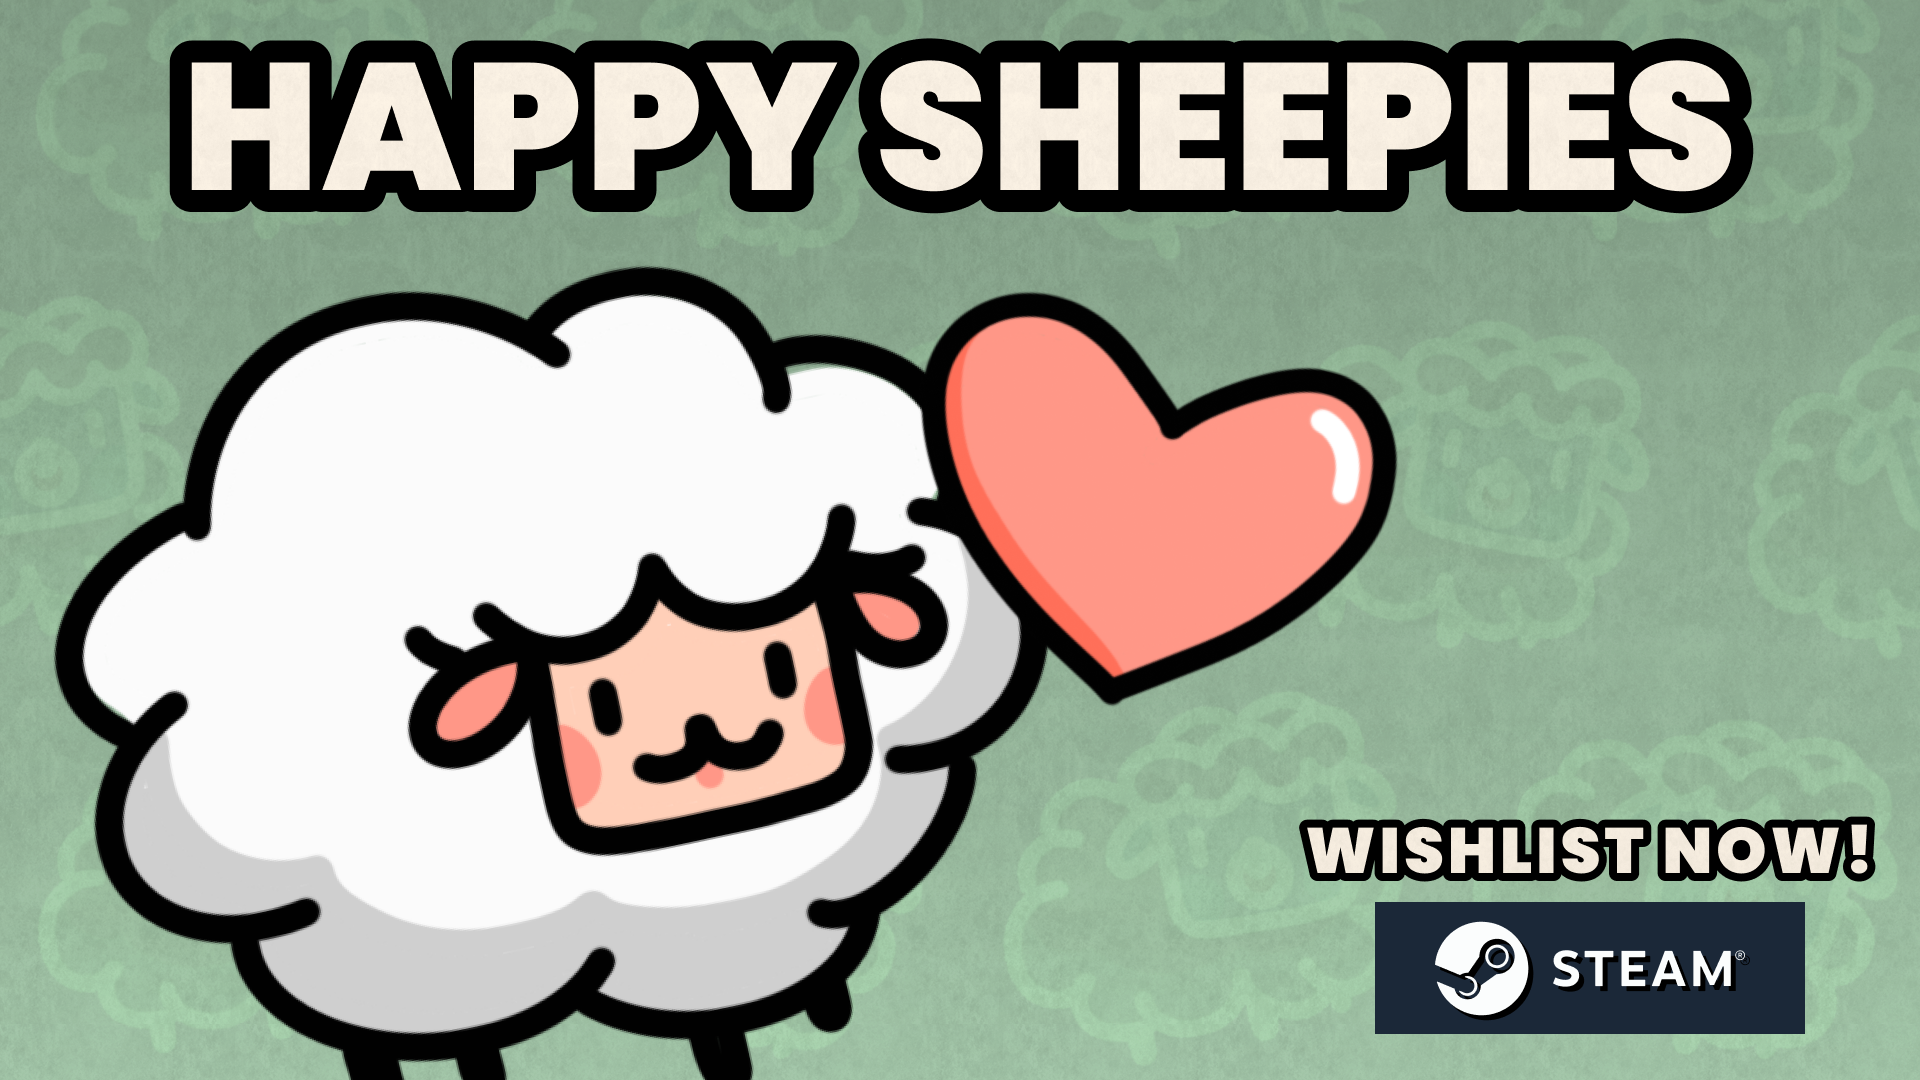 Happy Sheepies